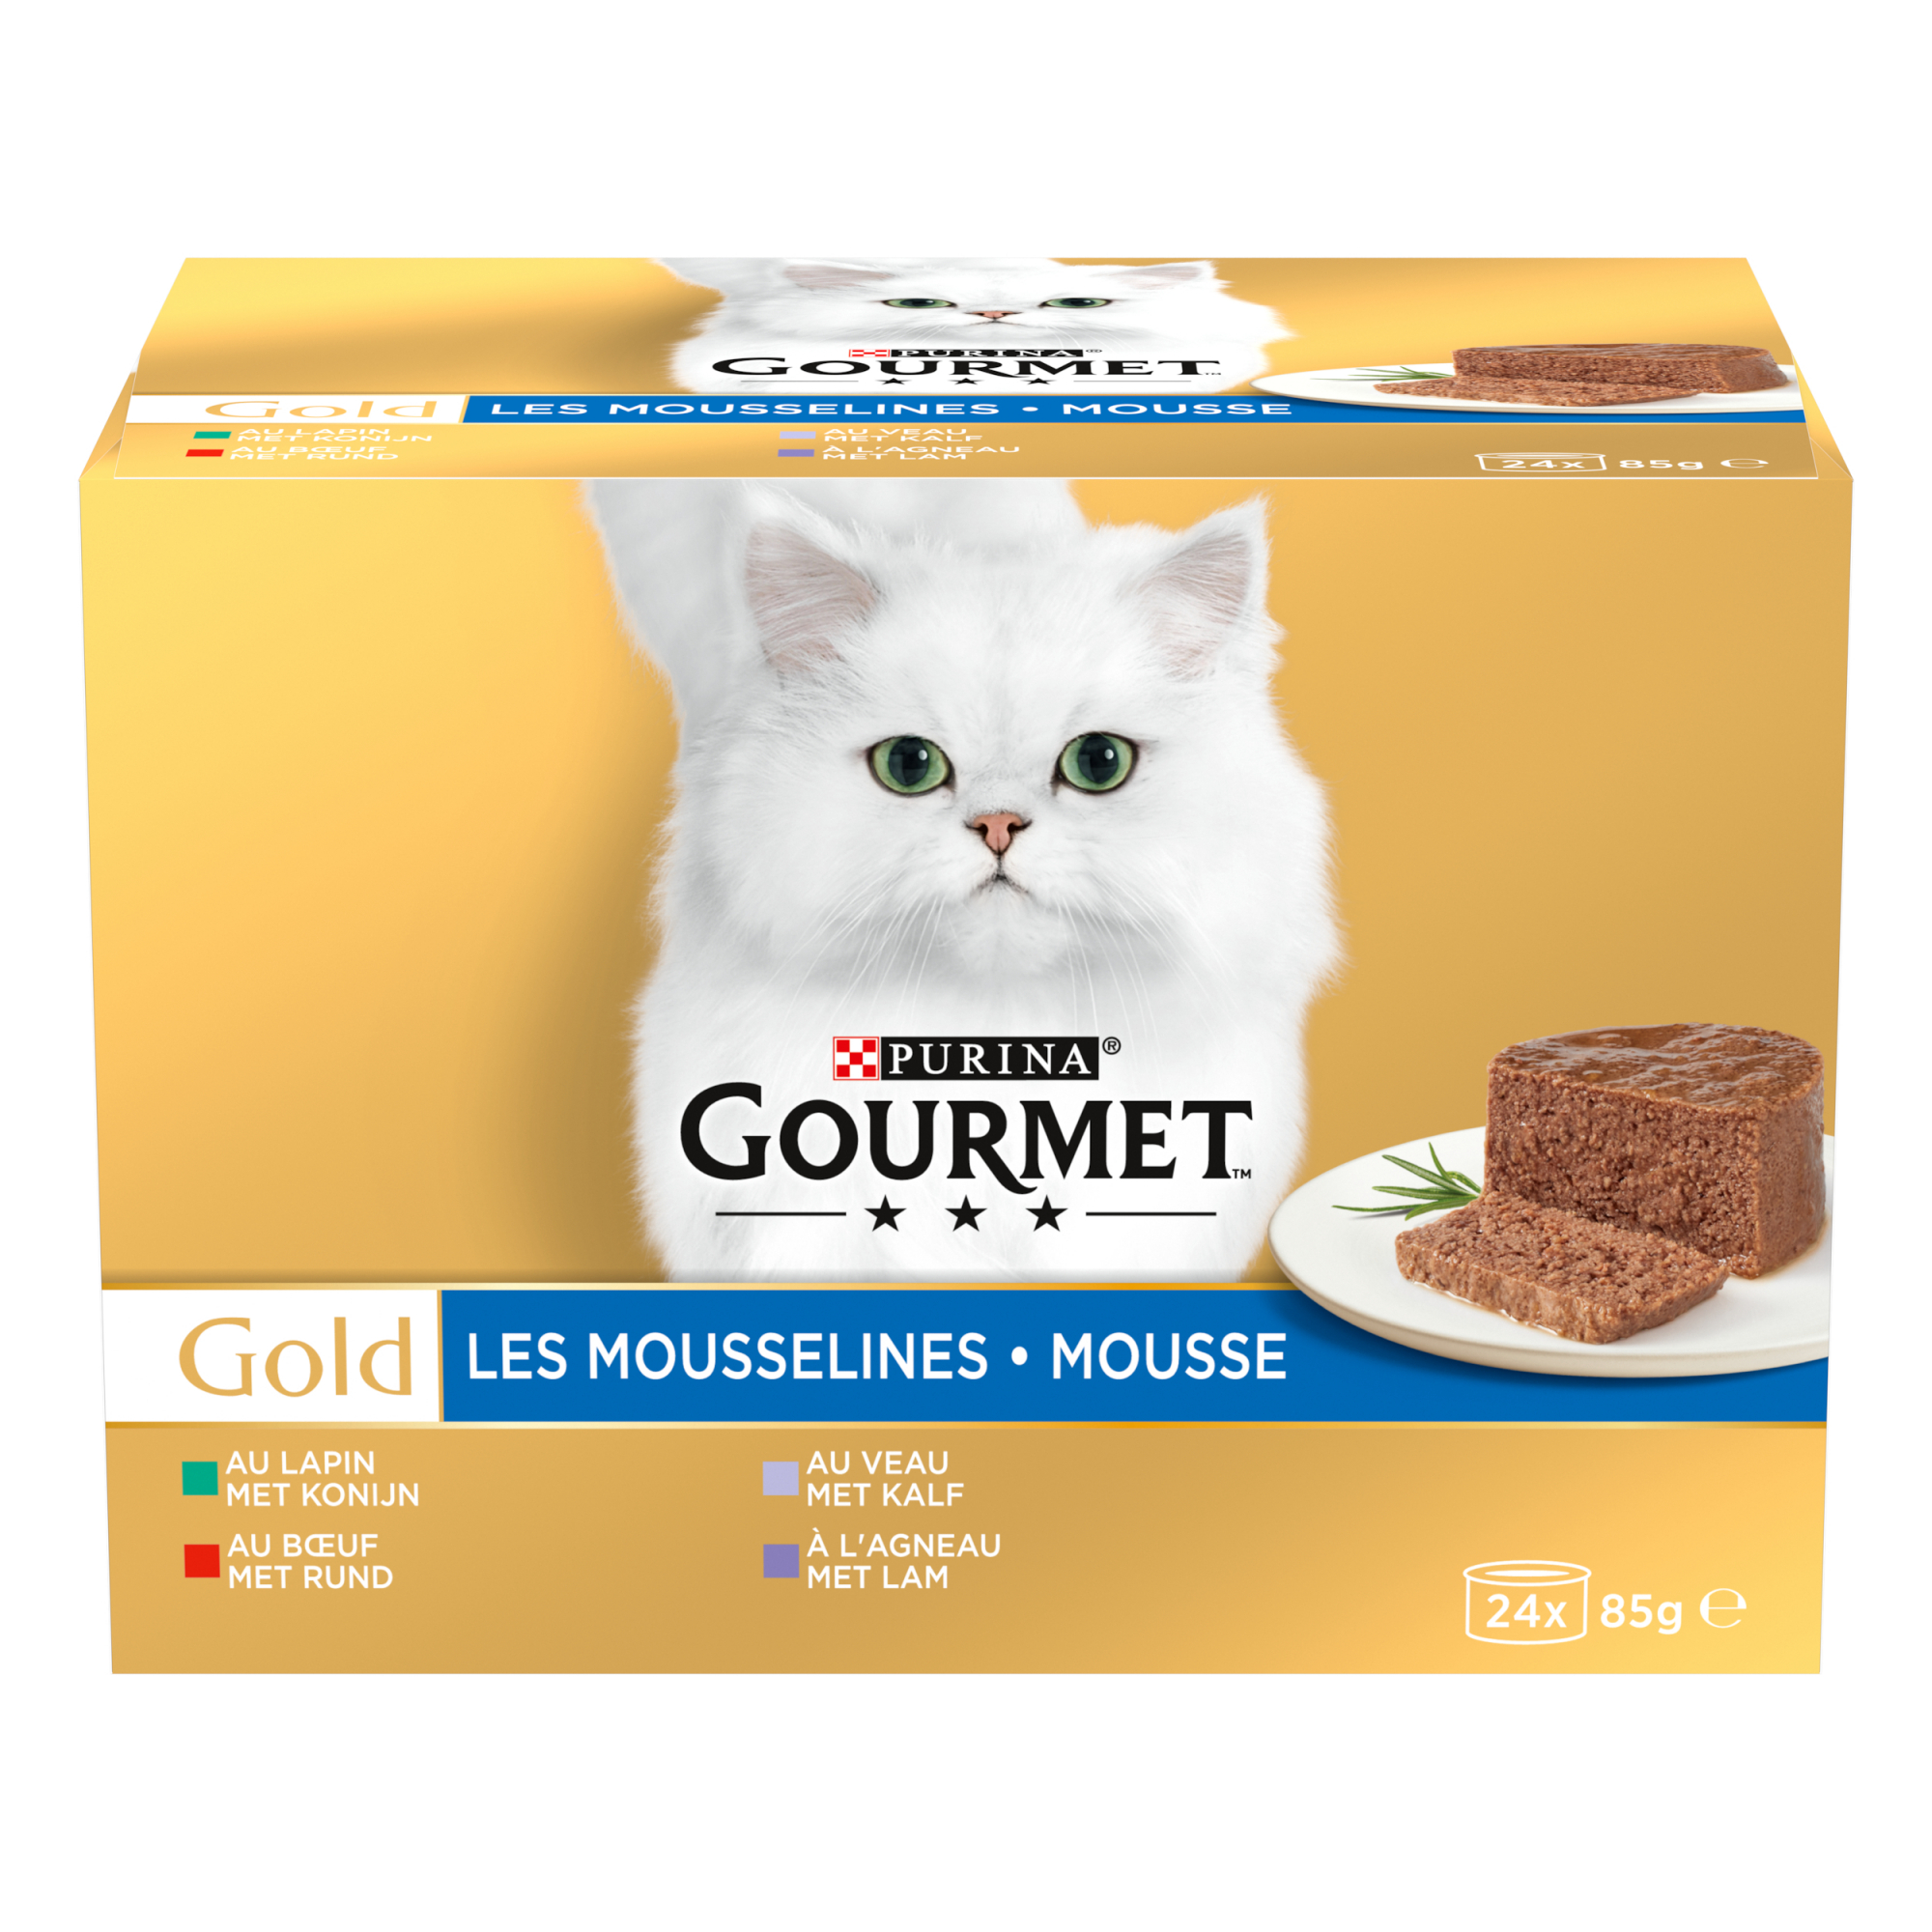 GOURMET GOLD Mousselines für ausgewachsene Katzen – 24x85g